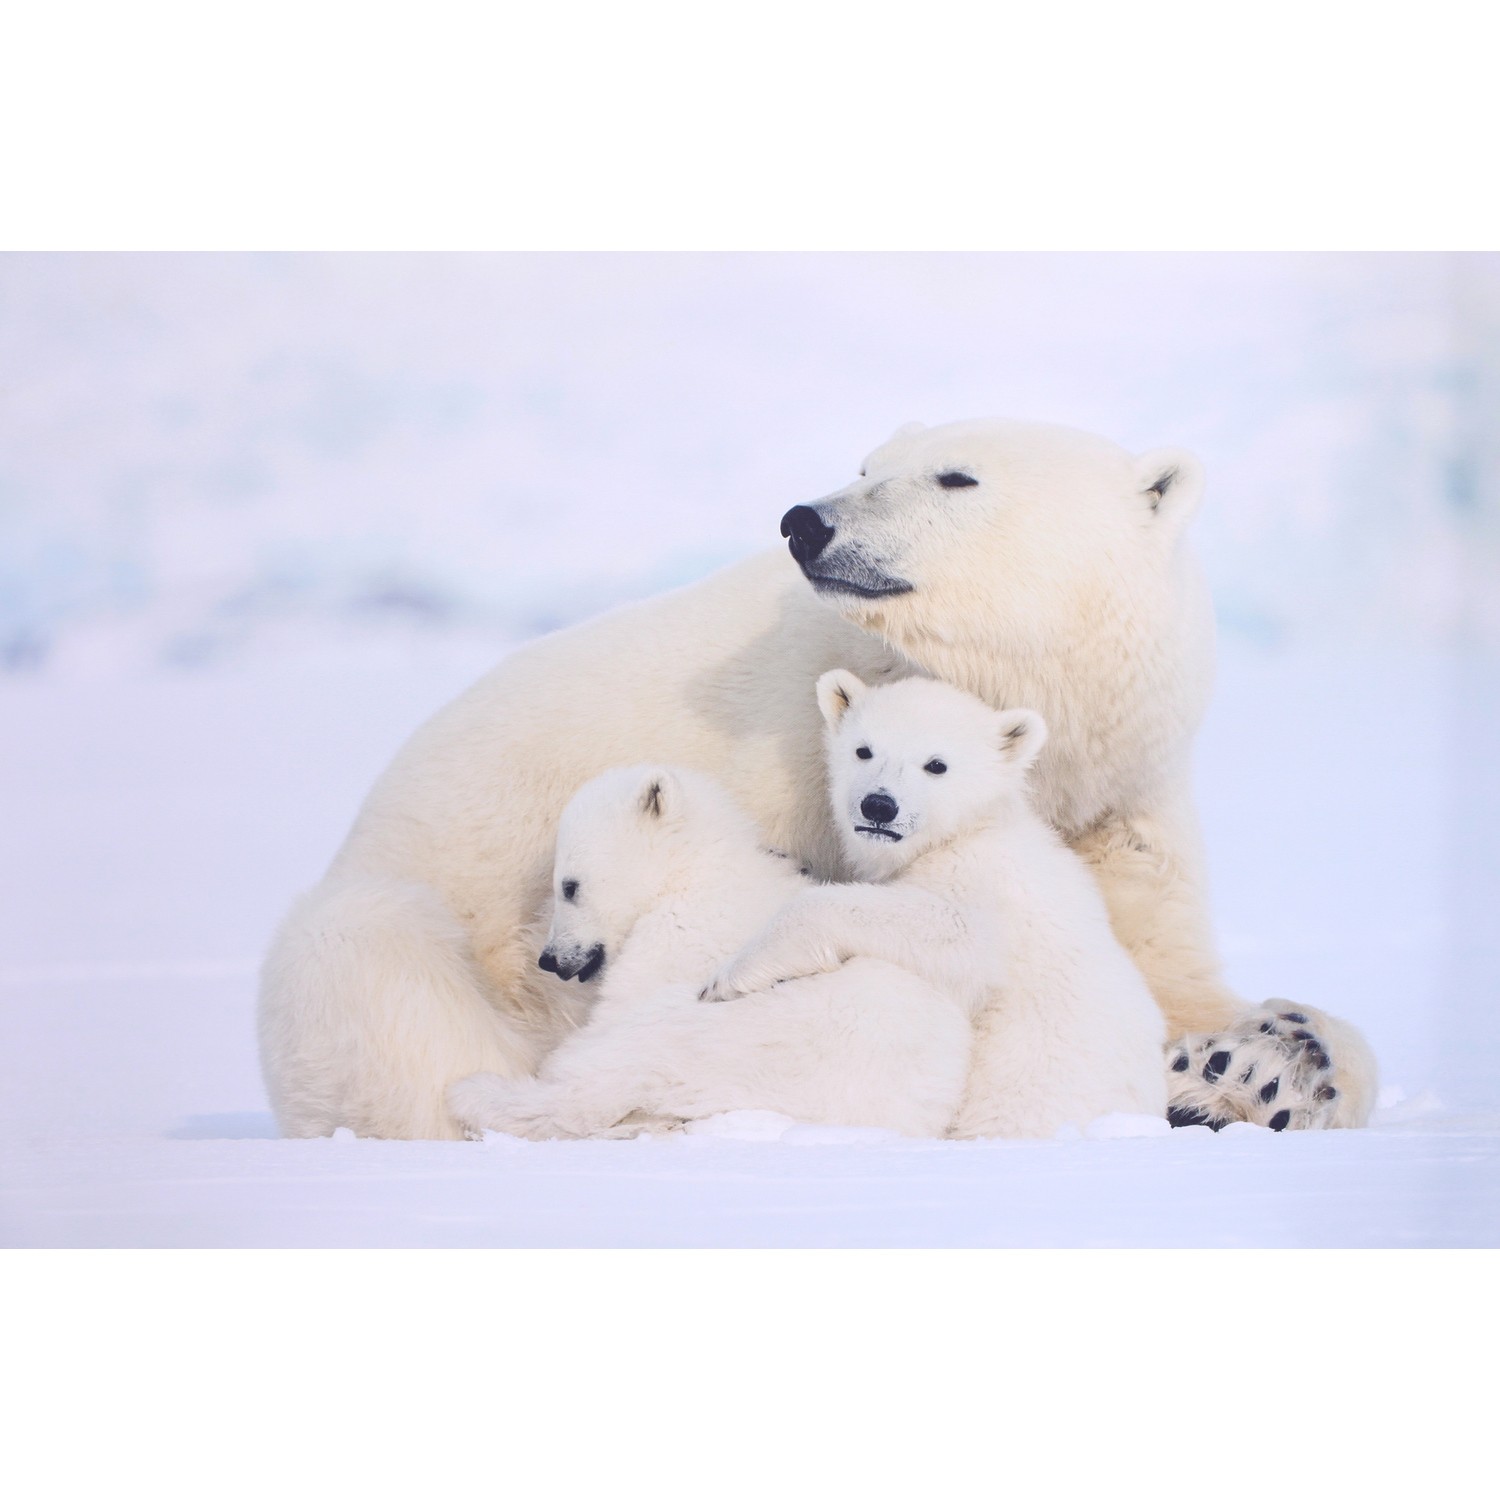 Tableau photo imprimée maman ours et ses petits